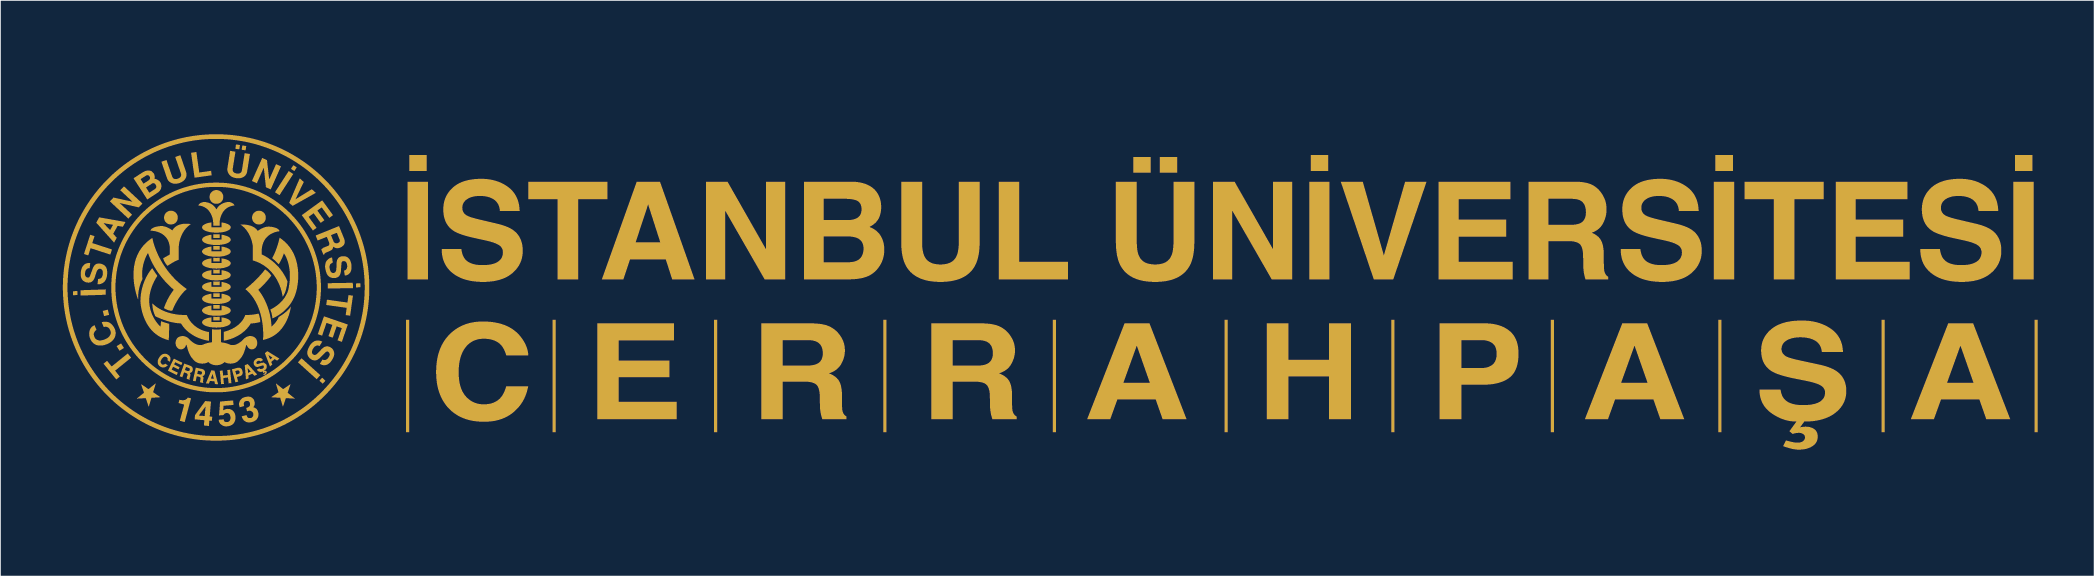 Destekleyen İstanbul-Universitesi-cerrahpaşa